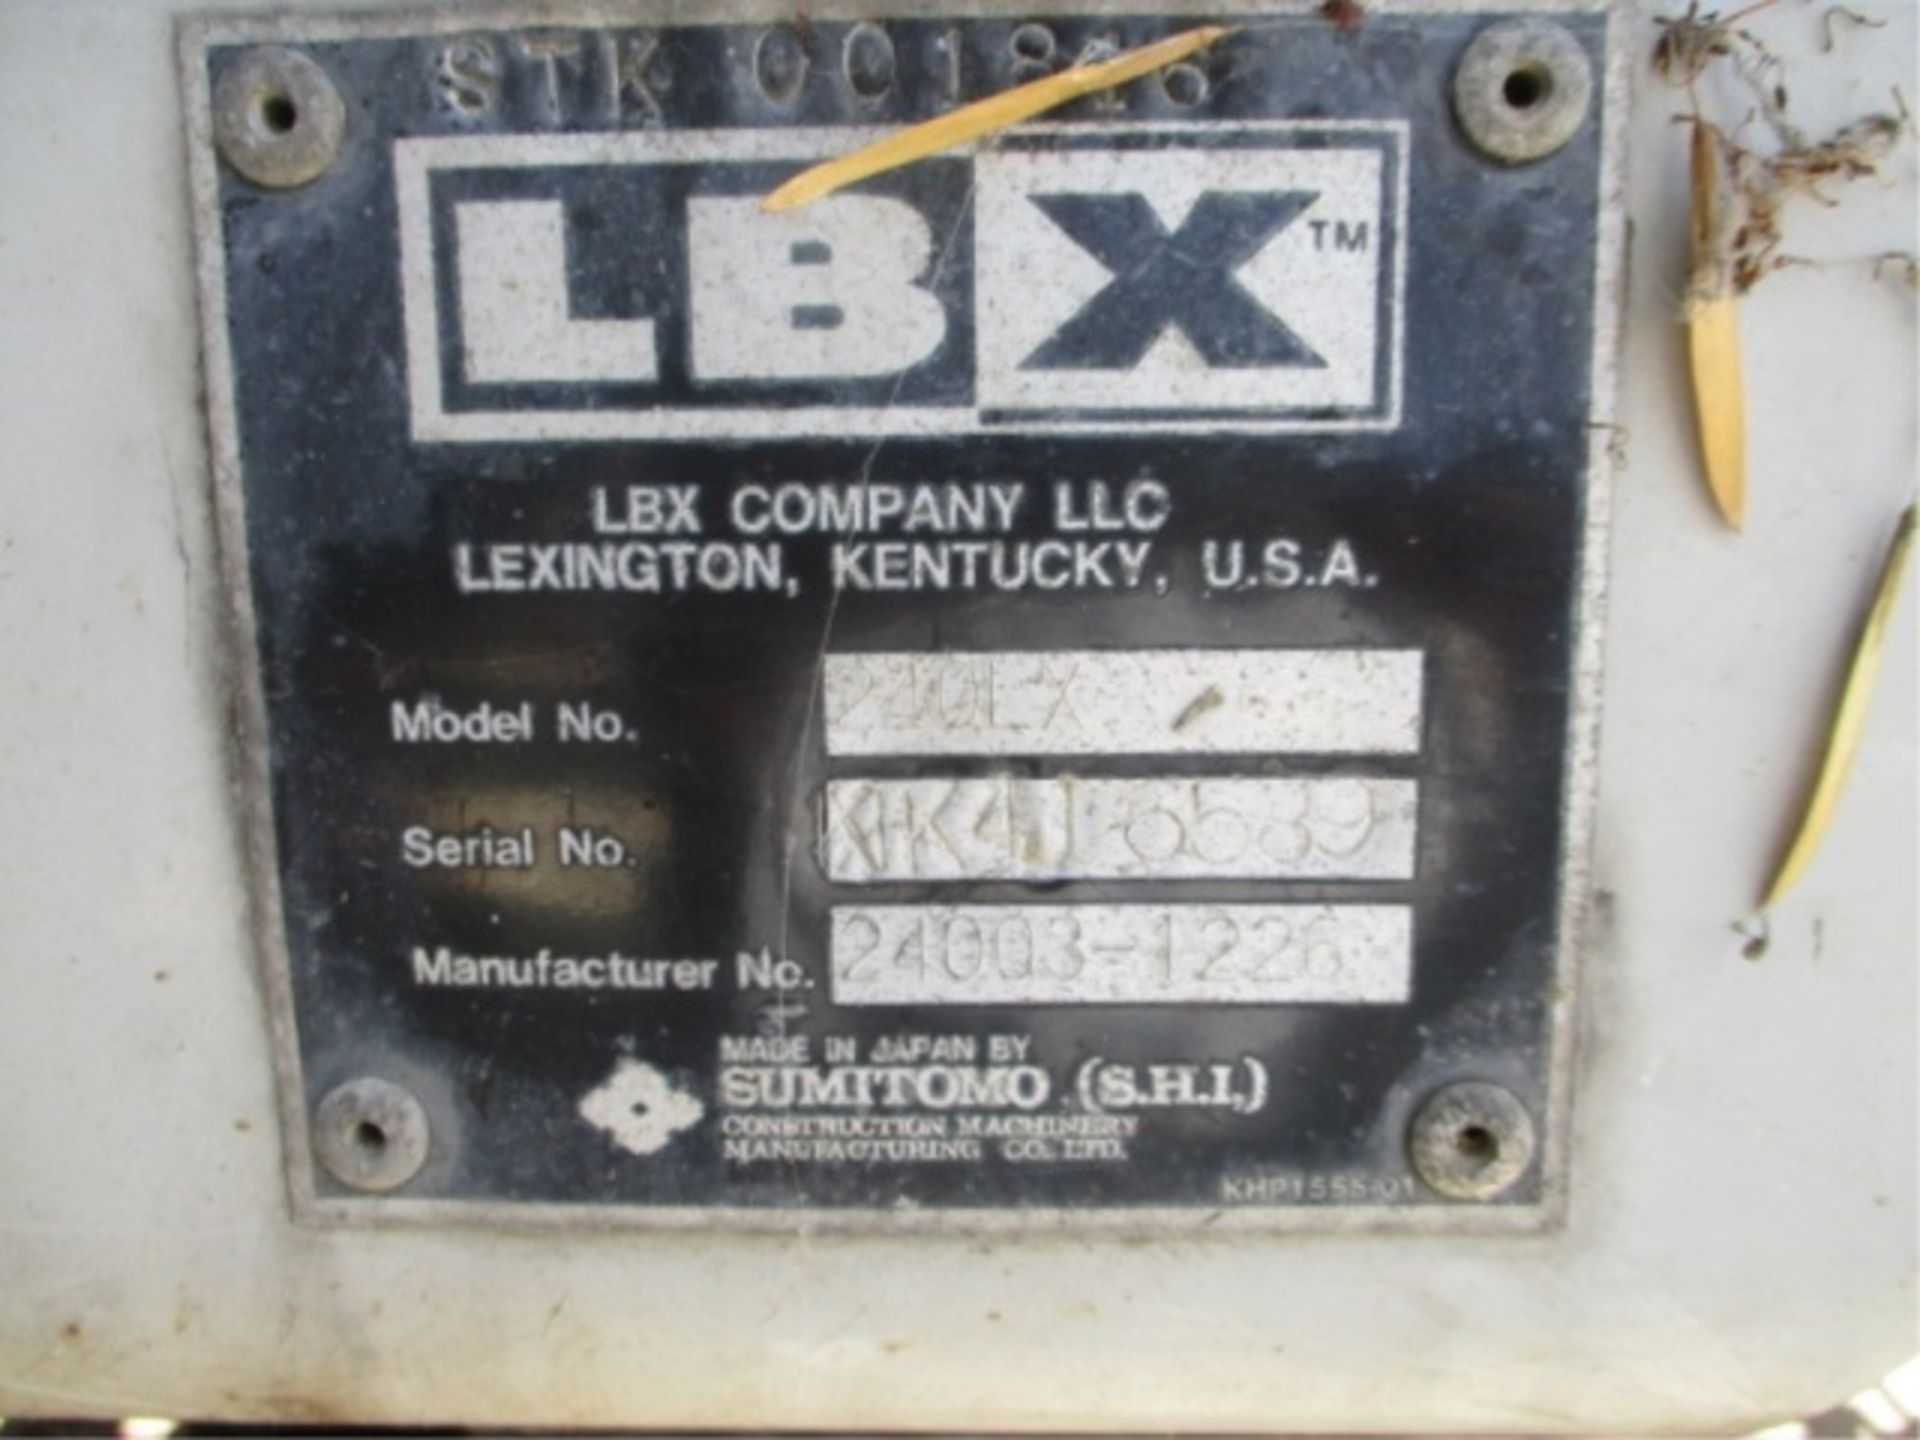 2005 Linkbelt 240 LX Hydraulic Excavator, Isuzu 6-Cyl Diesel, Hendrix Q/C, Cab W/AC, 24" Tooth - Image 34 of 39